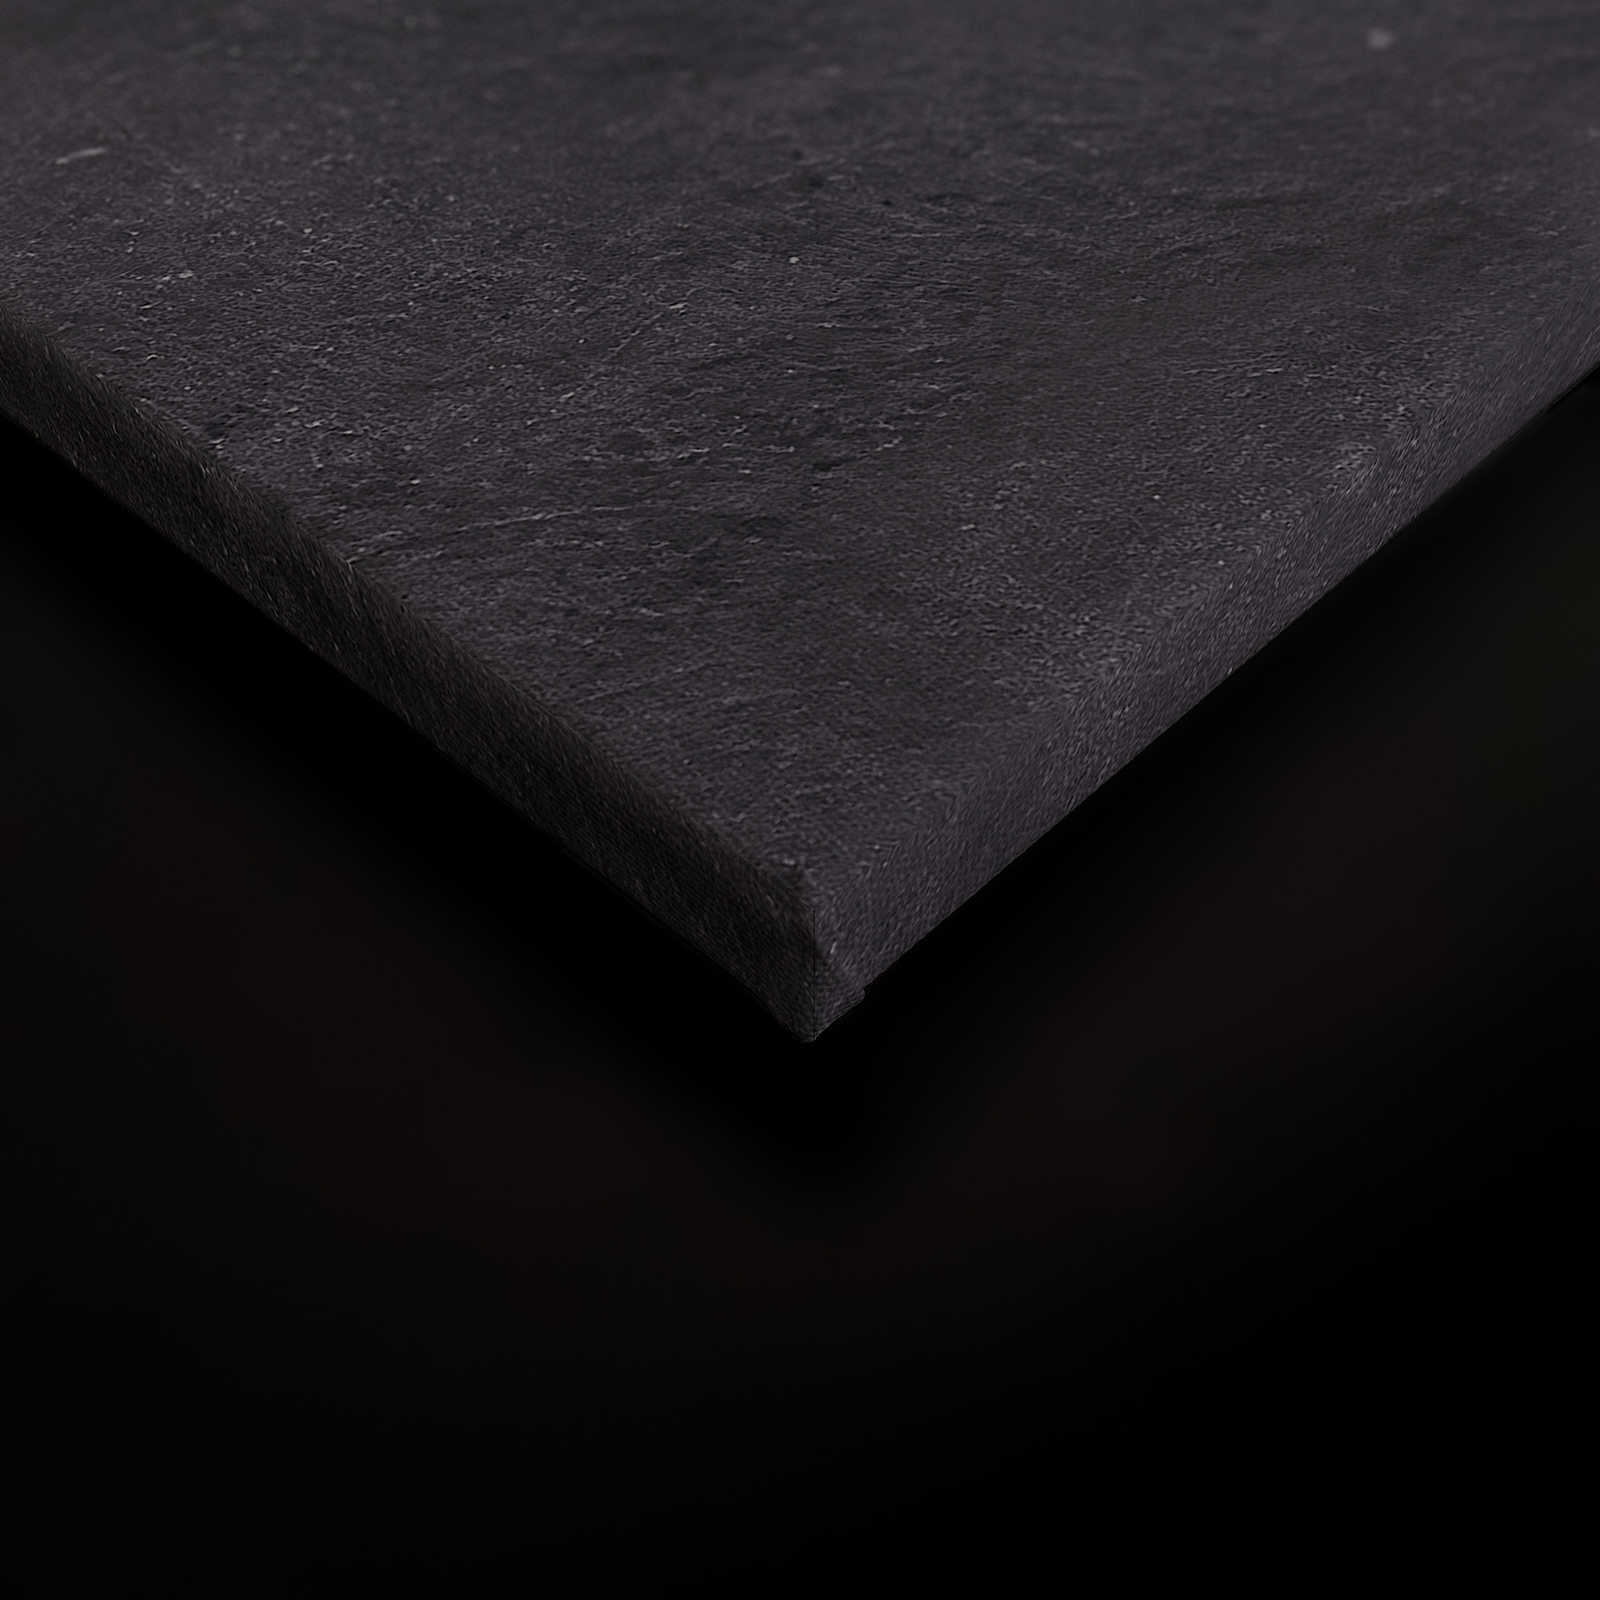             Schwarzes Leinwandbild Panter mit Fliegermütze – 0,90 m x 0,60 m
        